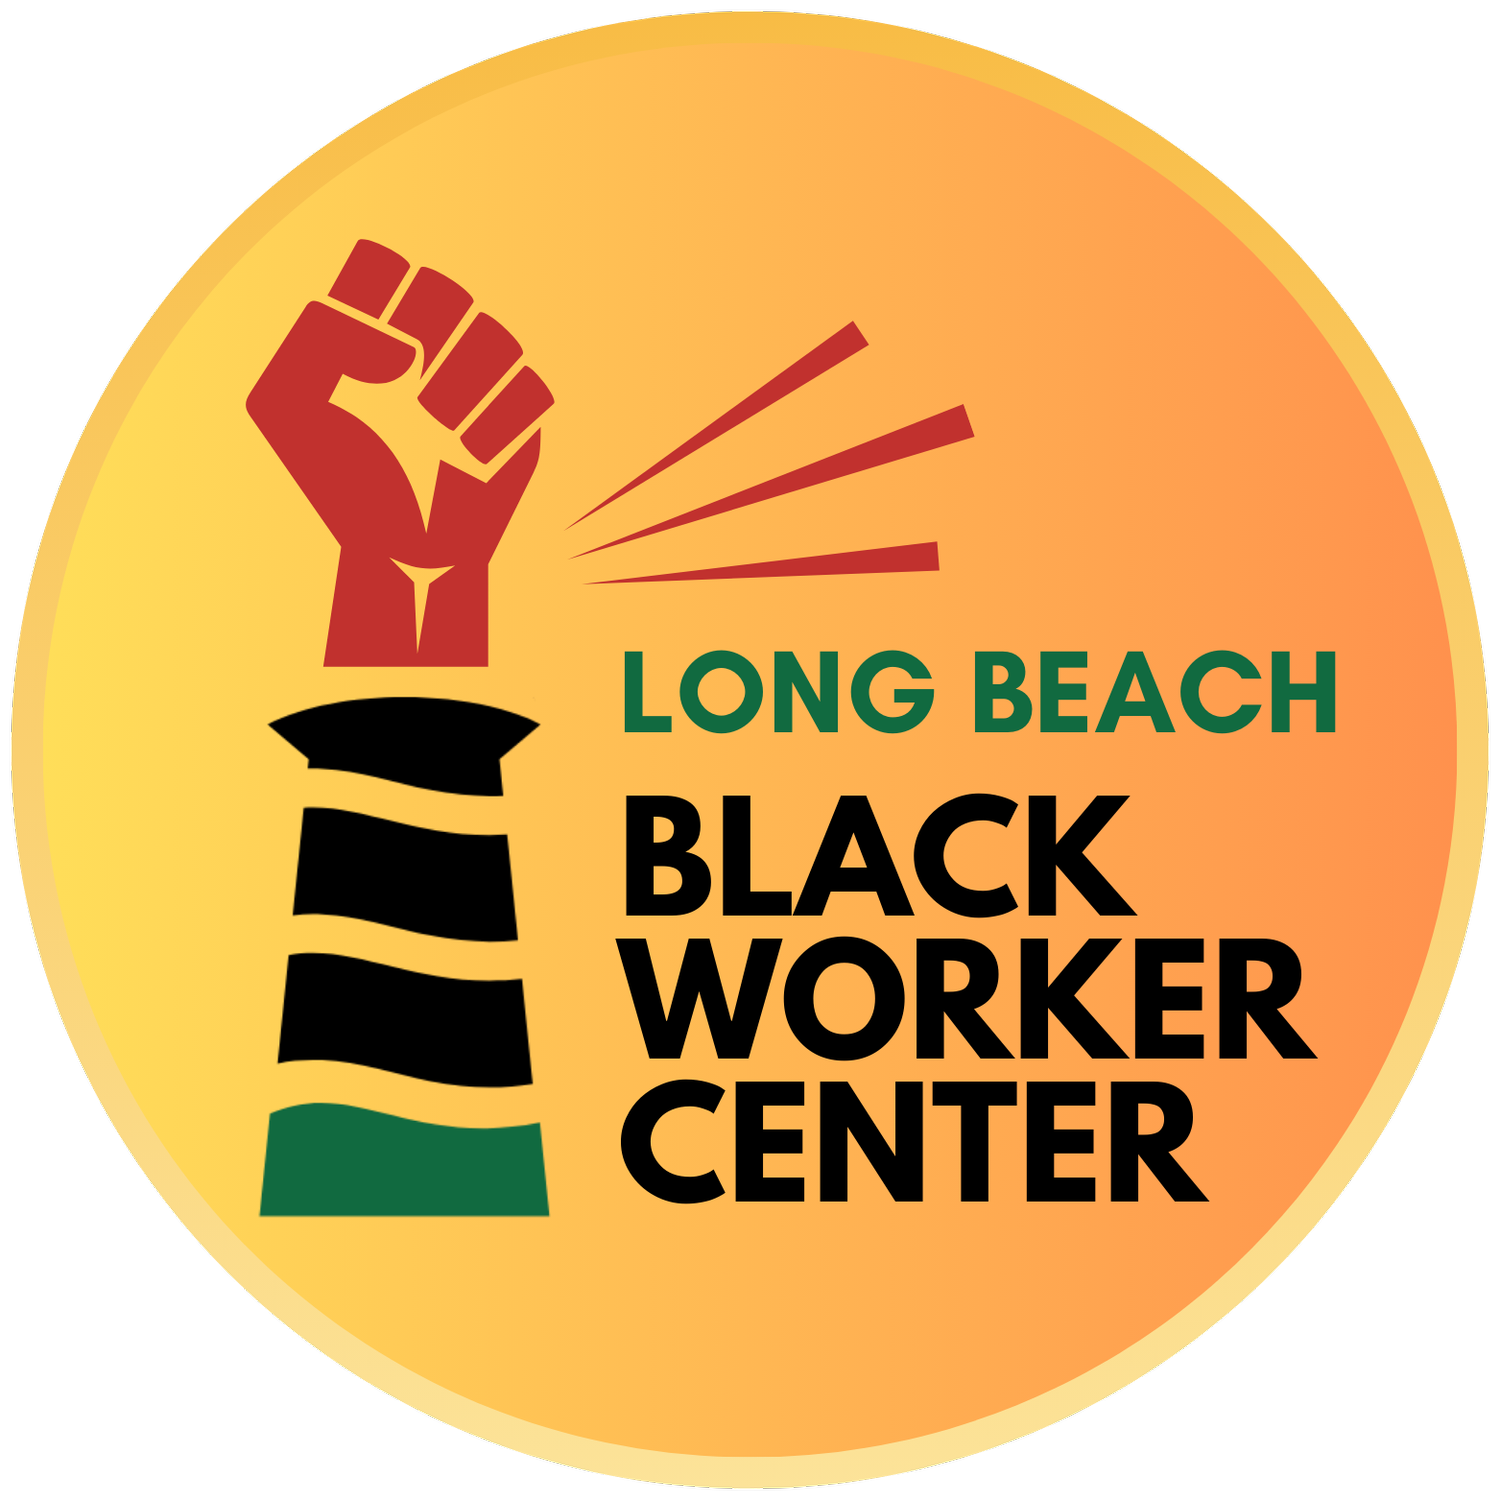 LONG BEACH BLACK WORKER CENTER